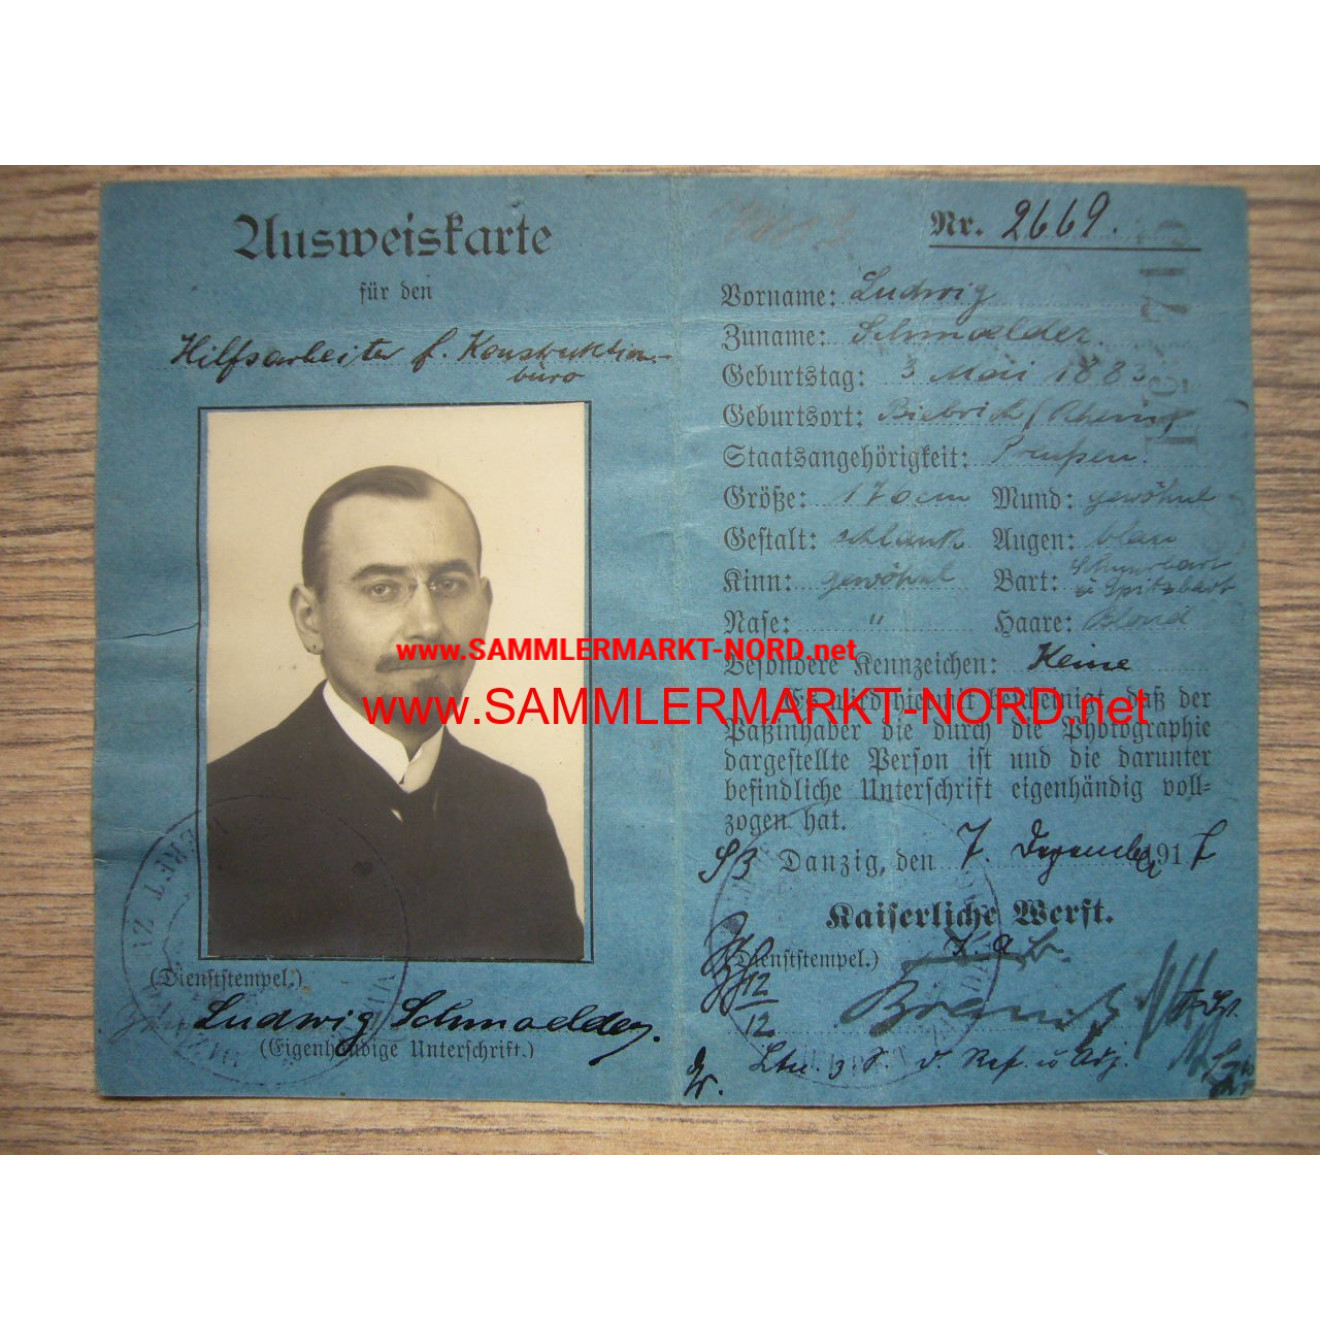 Imperial Shipyard Gdansk - ID card